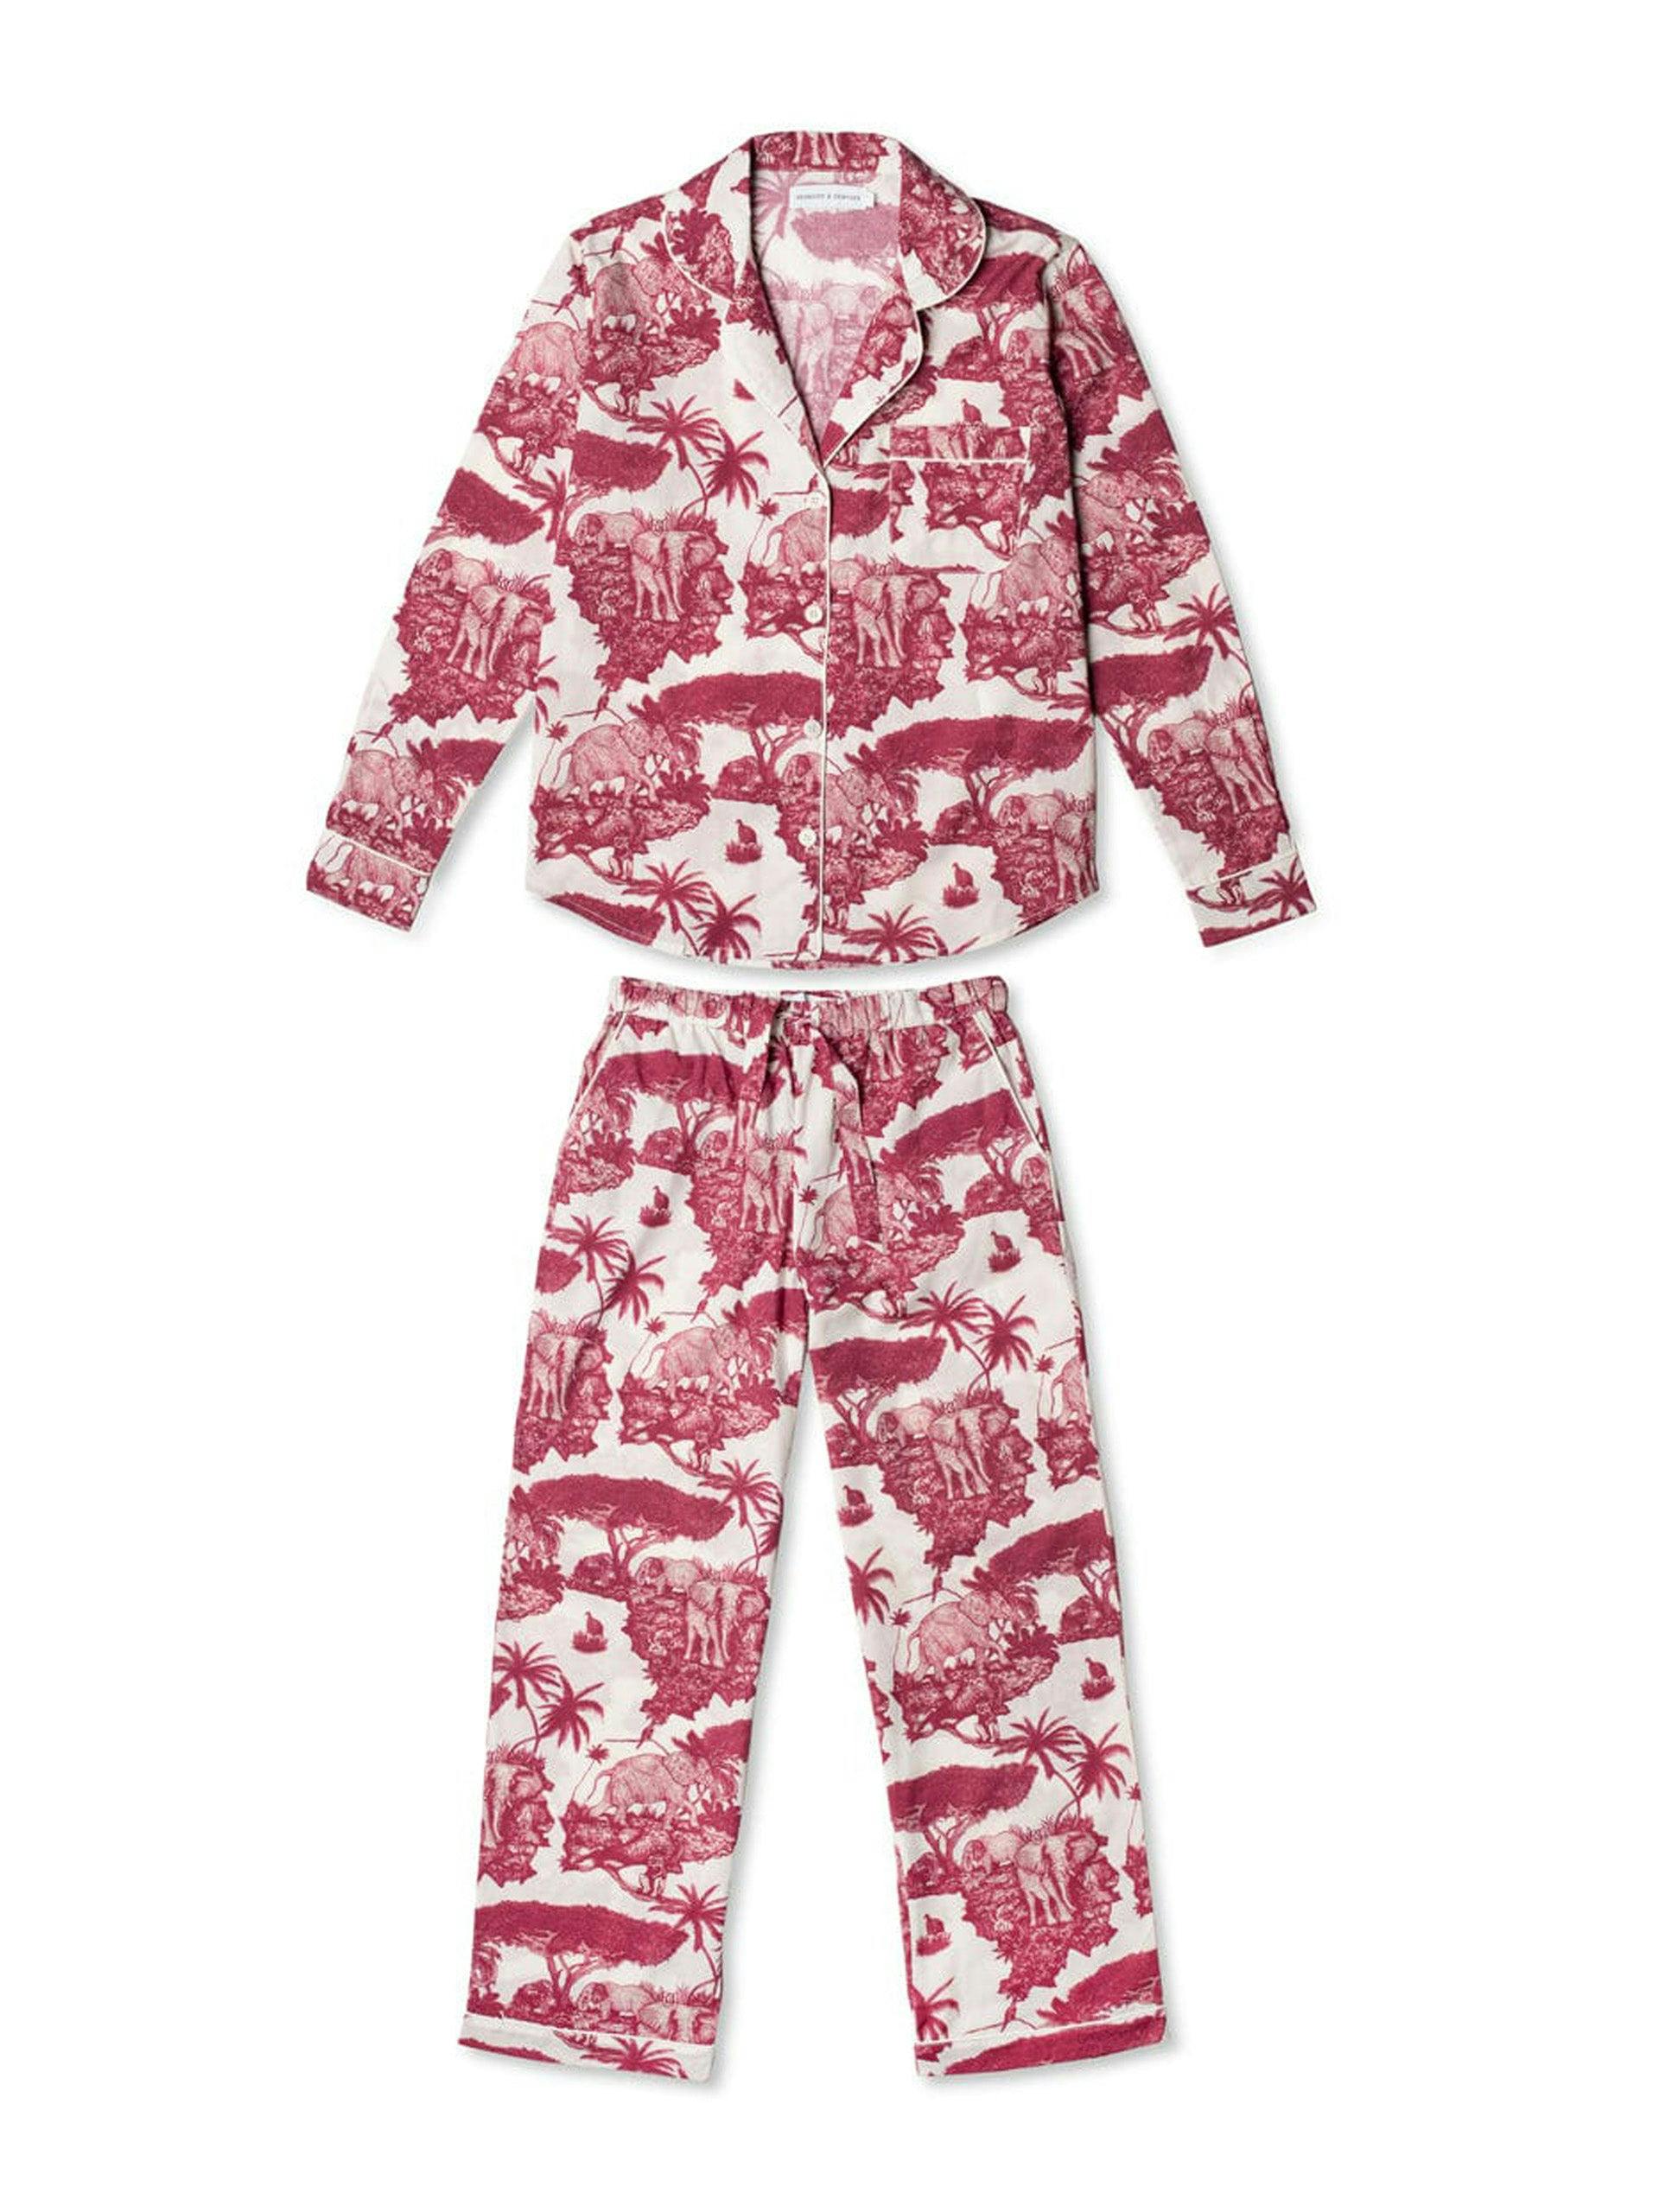 Loxodonta wine print long pyjama set